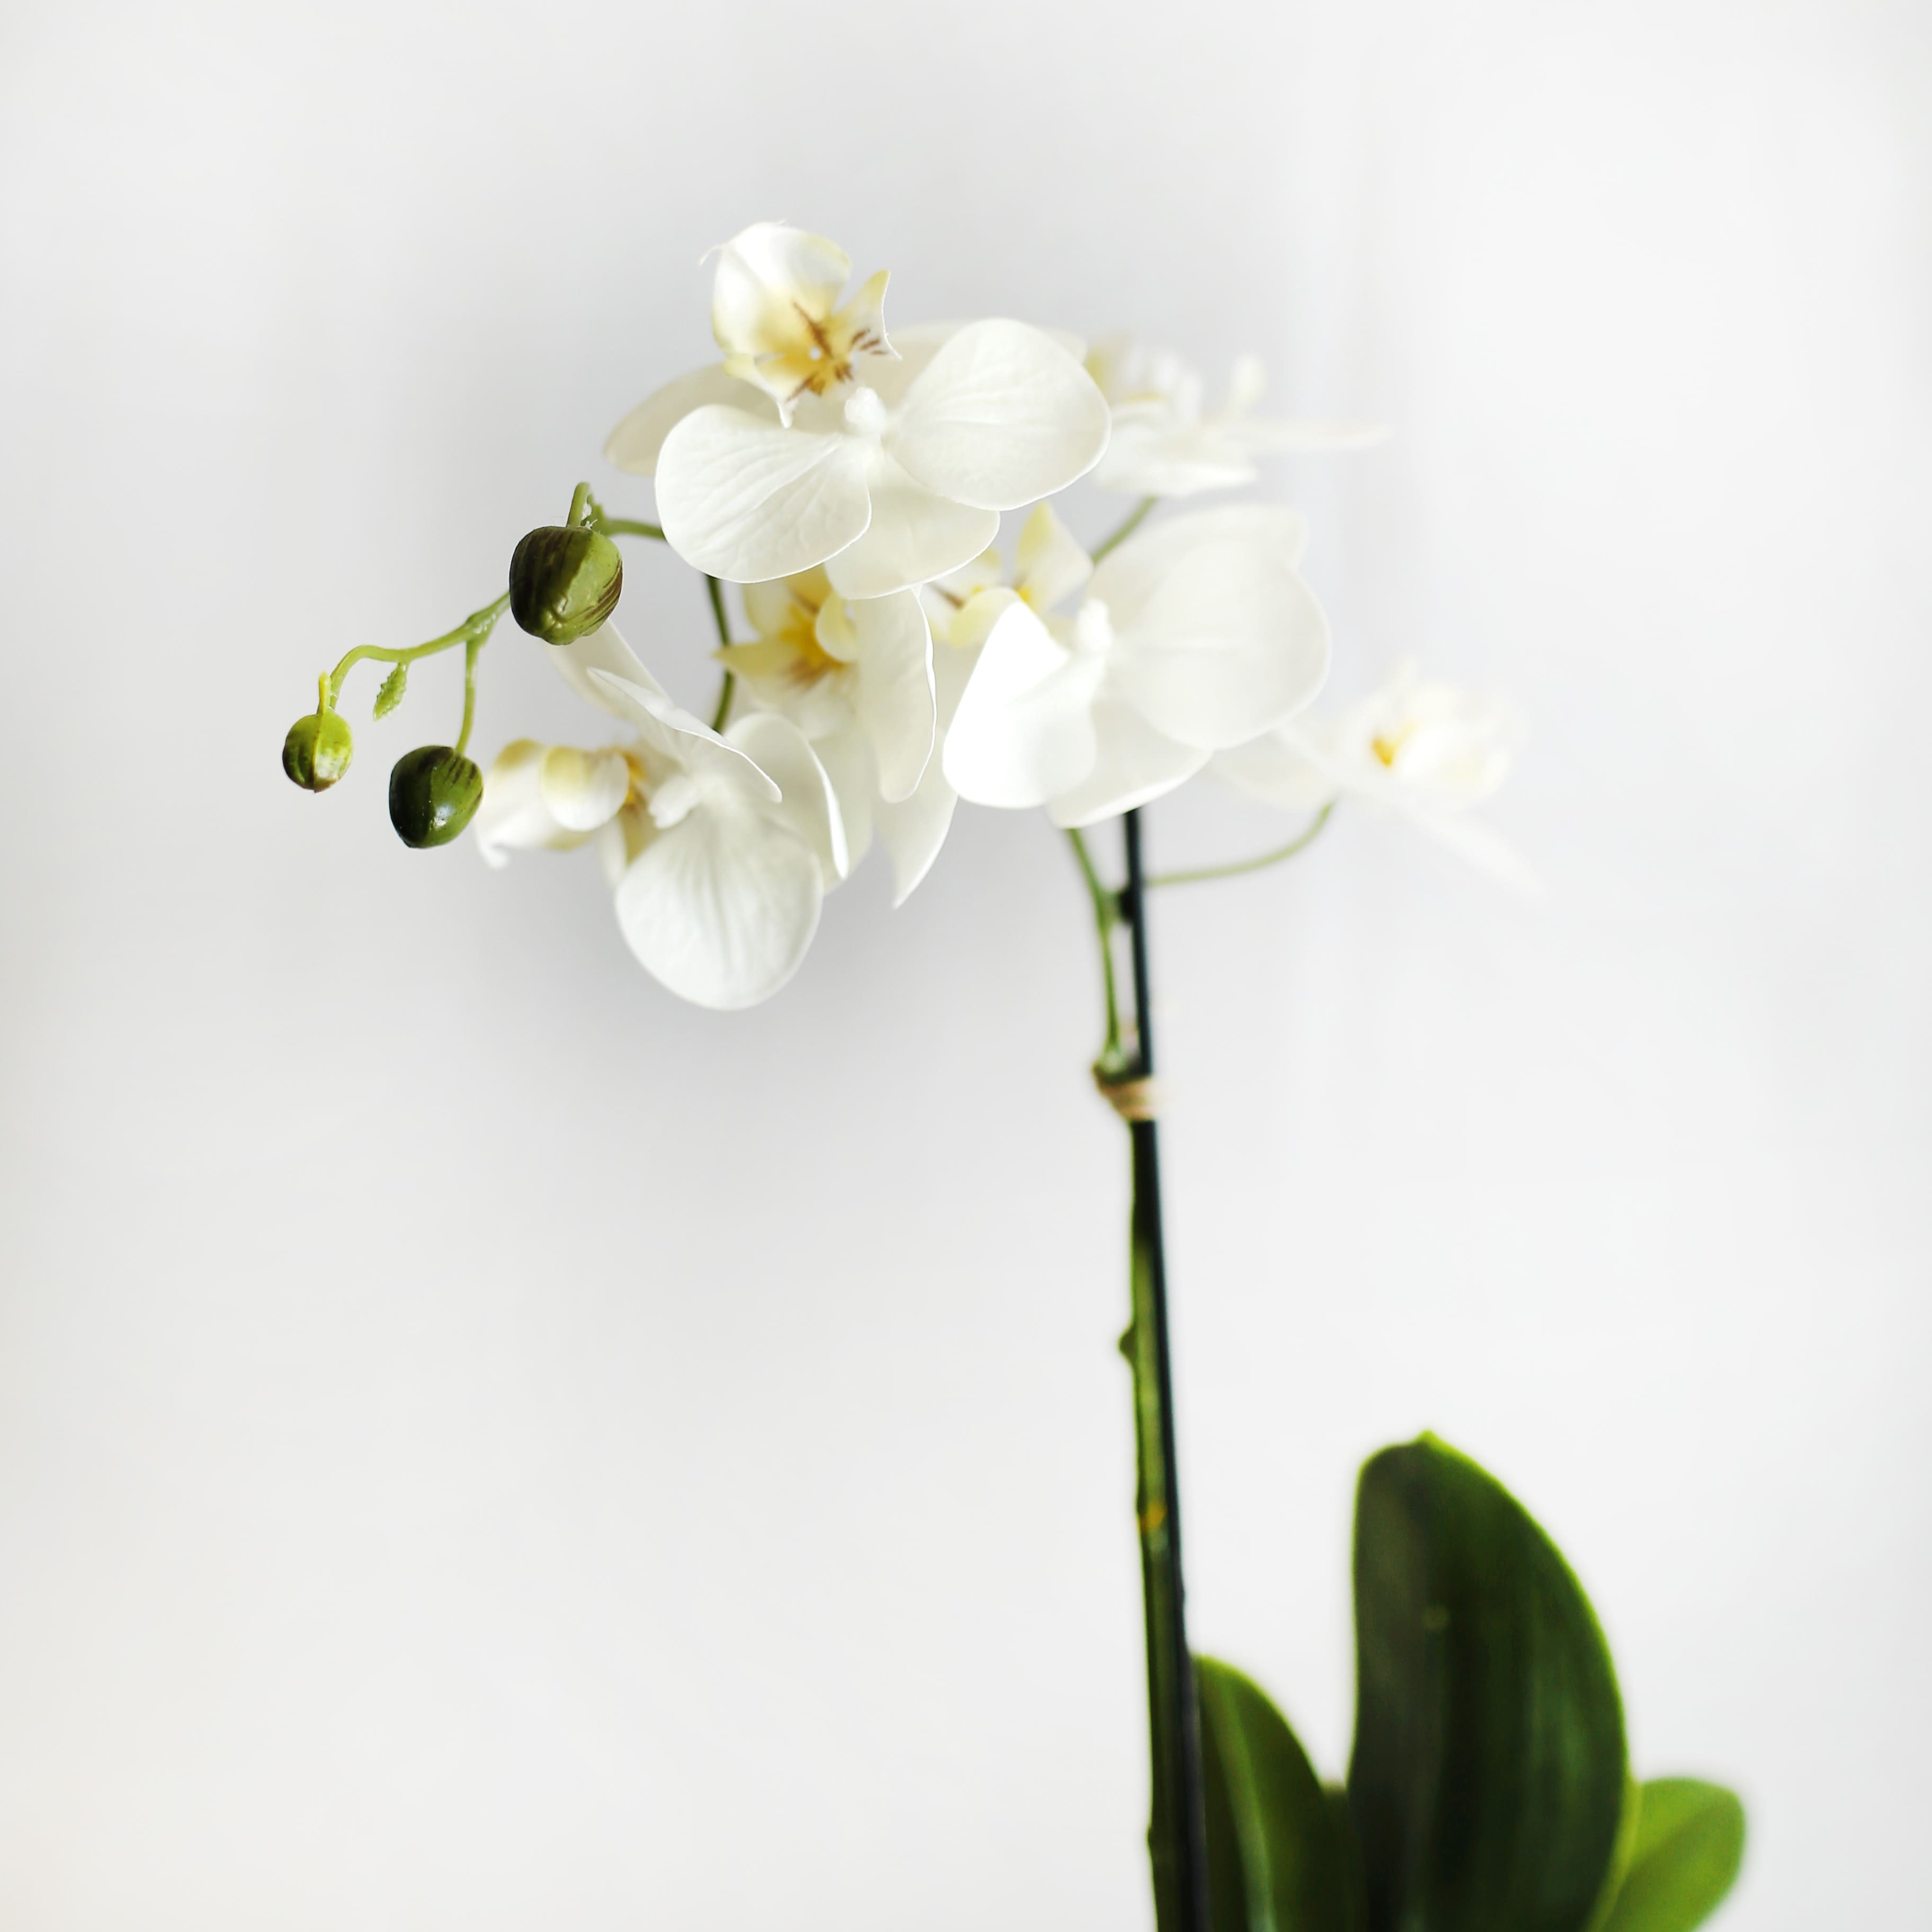 Ceramic orchid